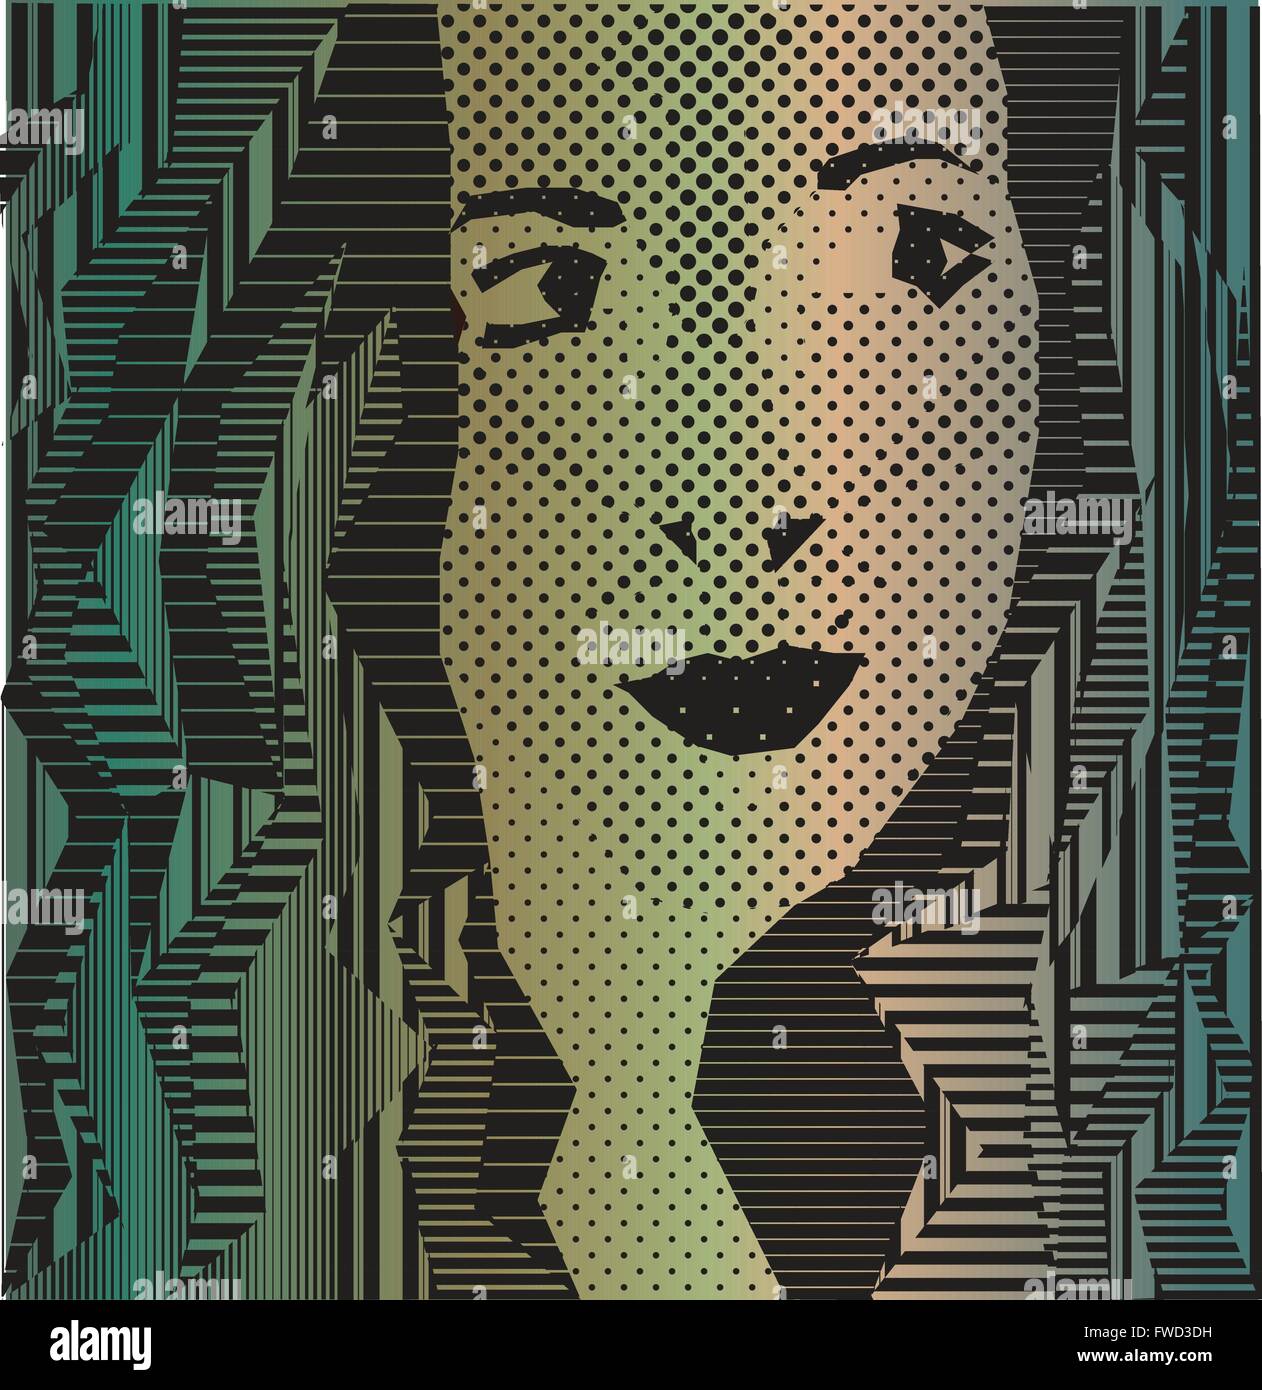 Pastel, vert, bleu, parsemée et bordée de rétro portrait d'une jolie fille Illustration de Vecteur